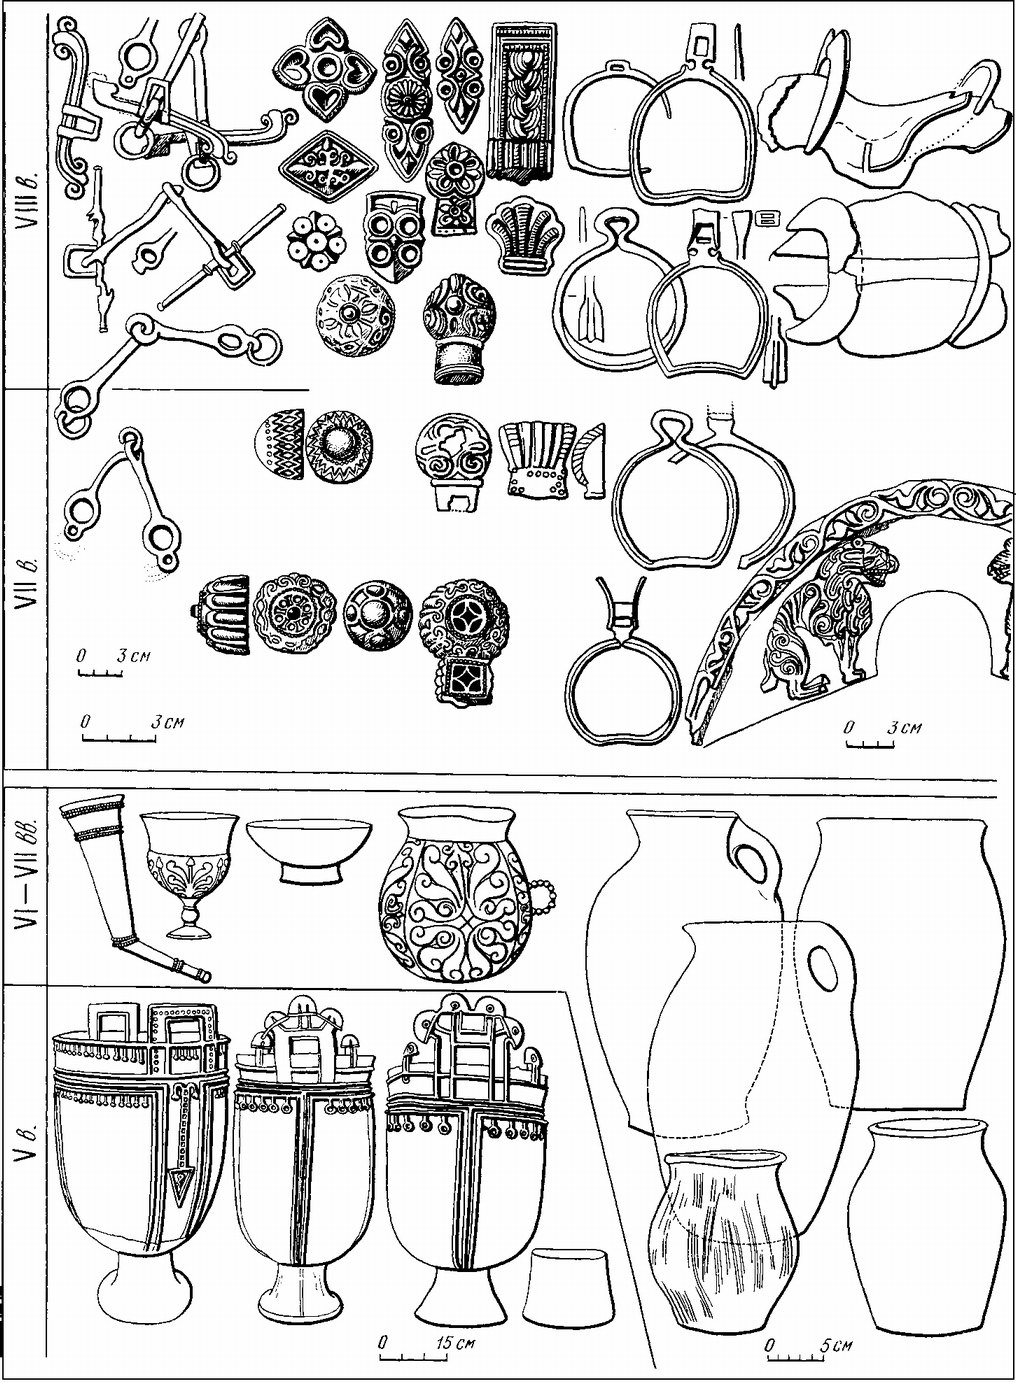 Конское снаряжение, украшения и посуда кочевников V—VIII вв. (Степи Евразии. С. 107)